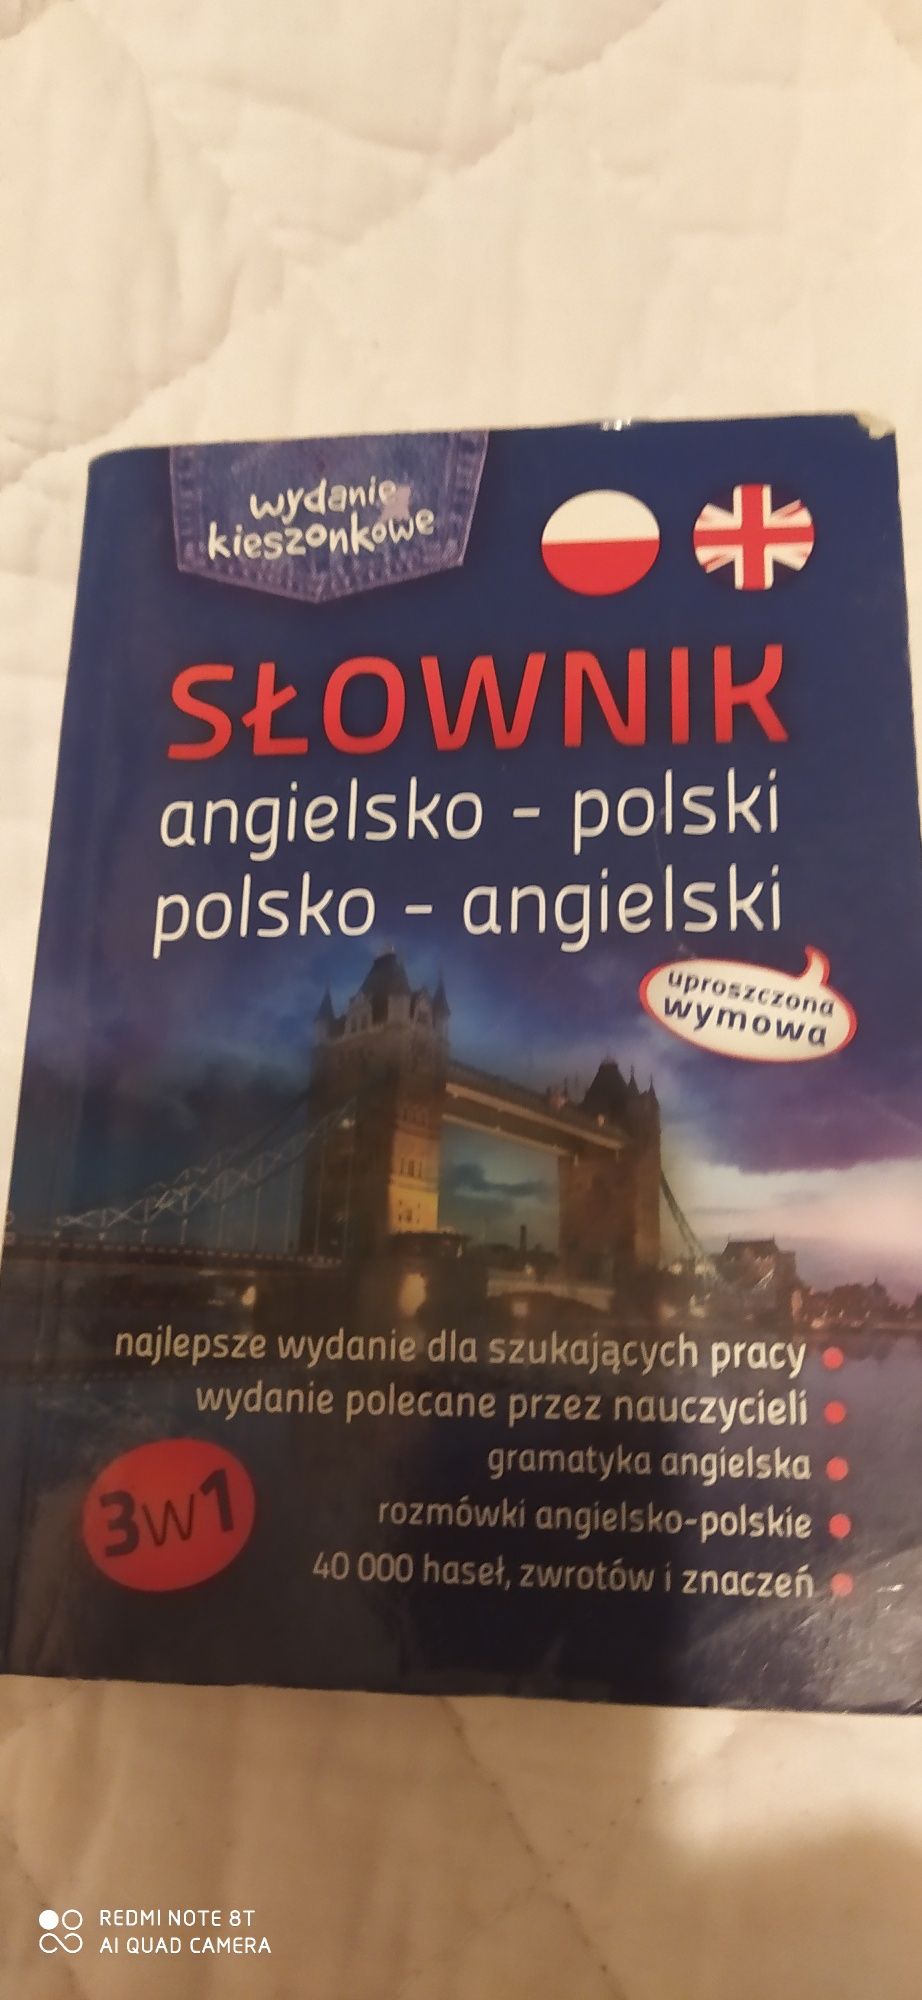 Słownik Polsko Angielski 8 zł